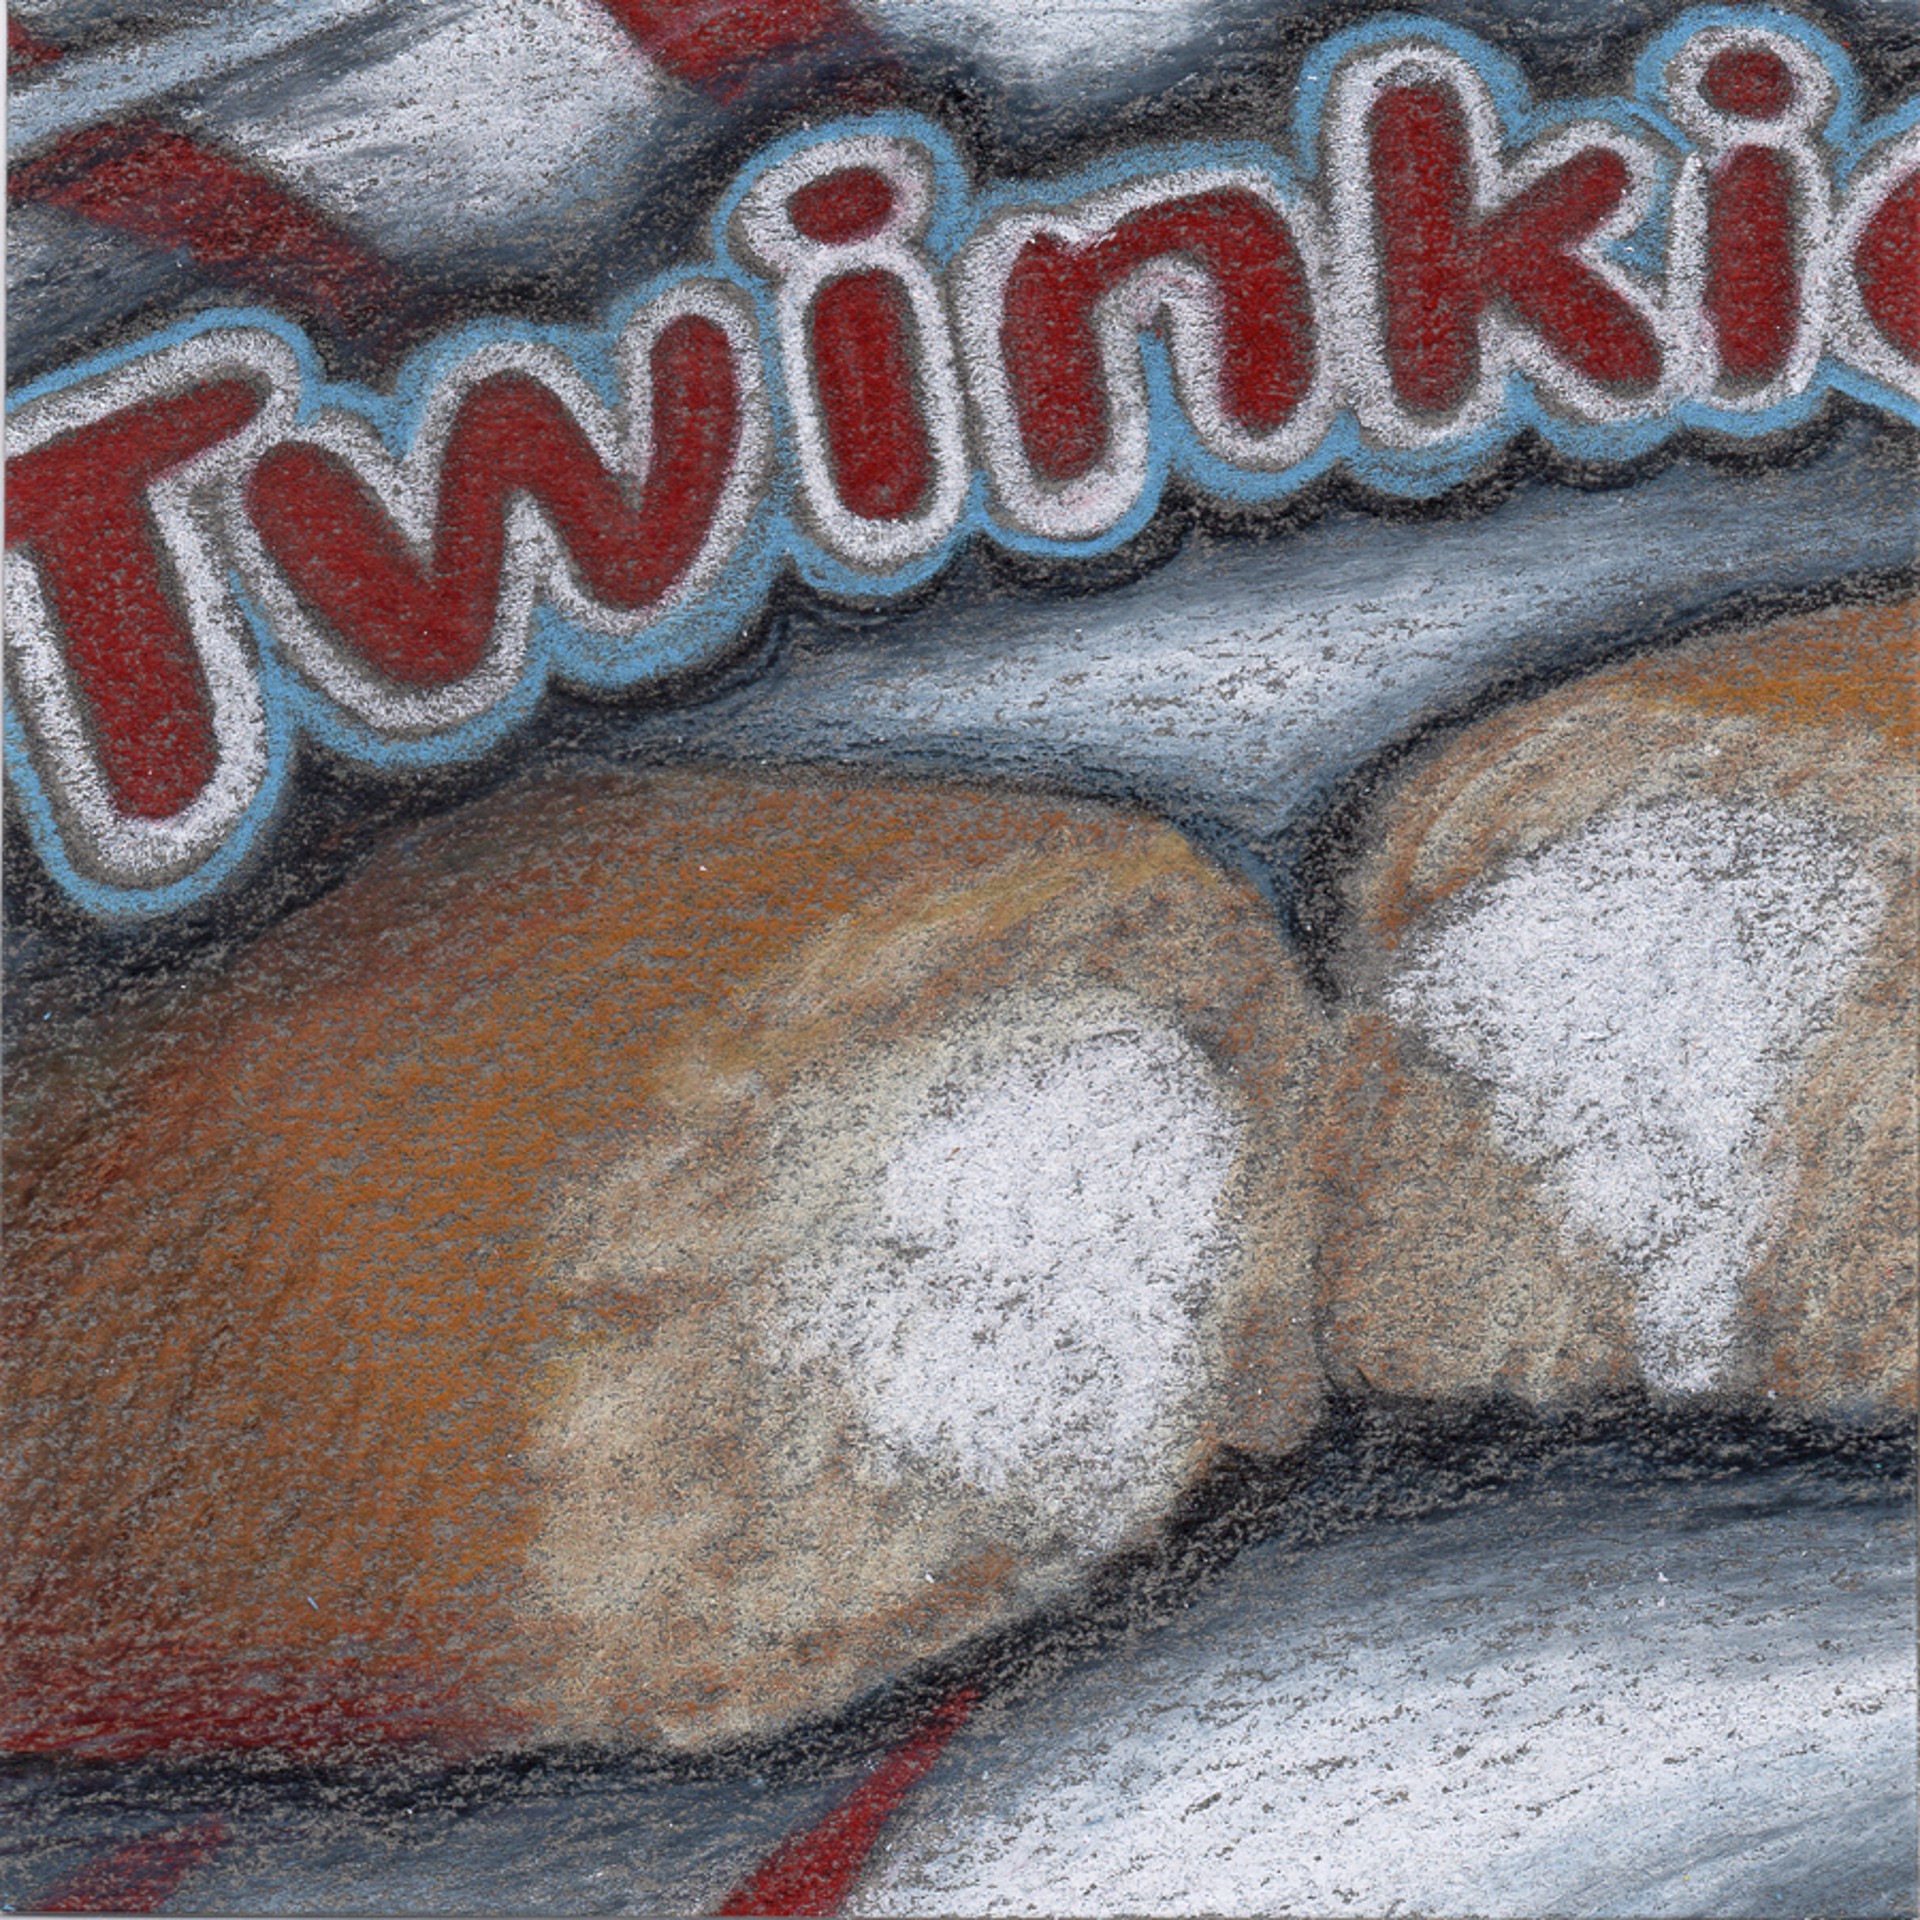 Twinkies by Neva Mikulicz